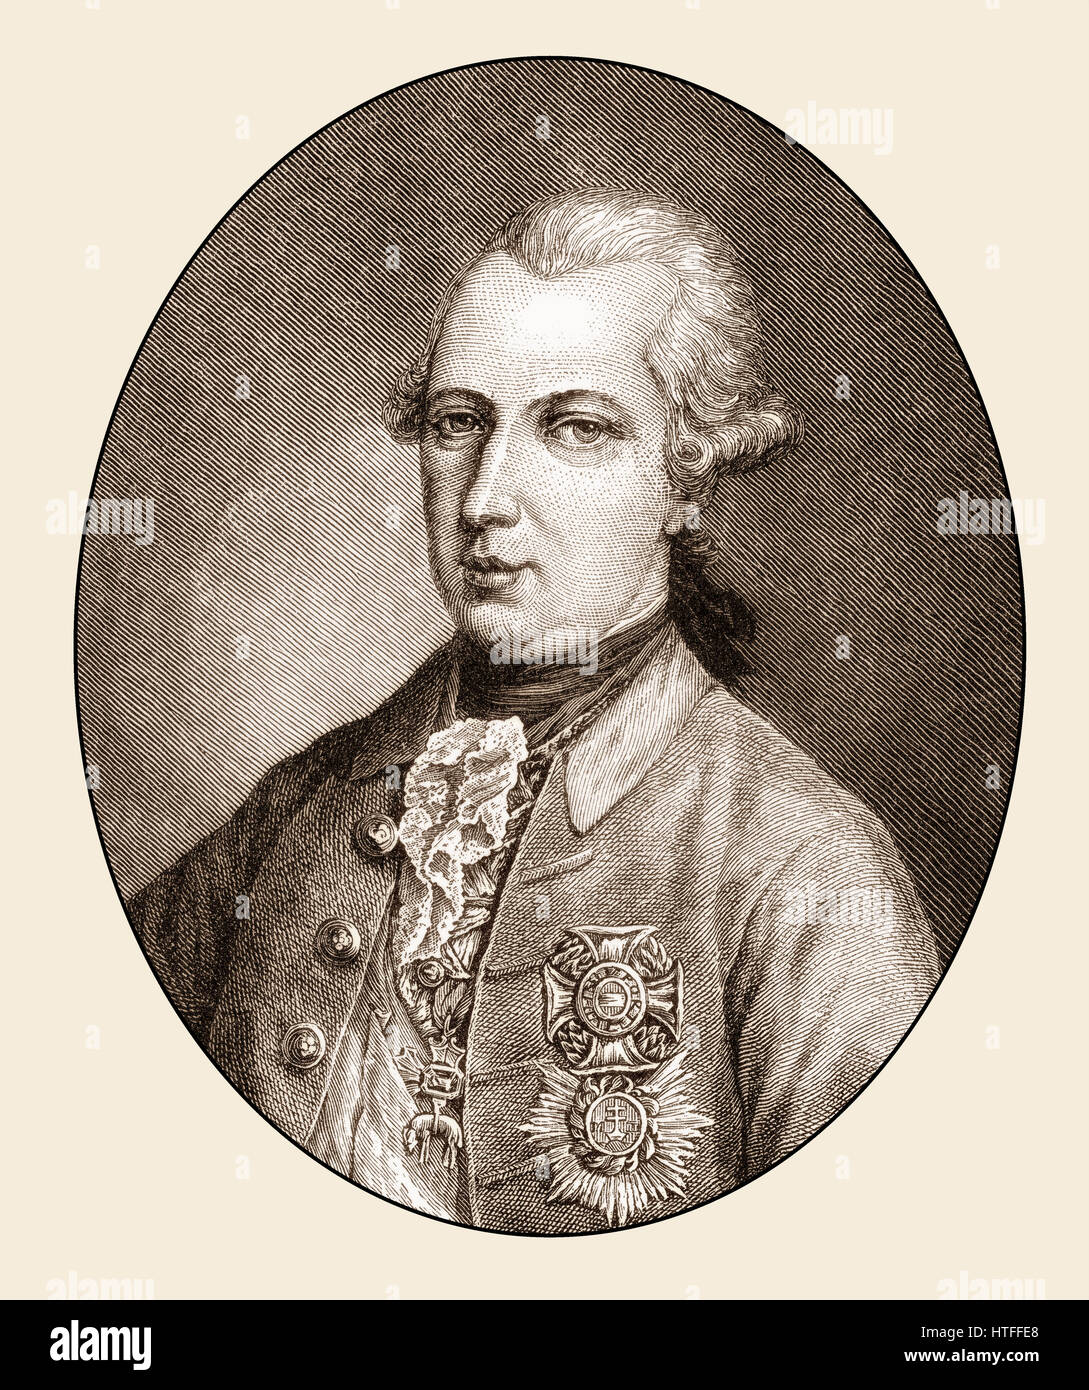 Joseph II, Emperor of Germany, 1741-1790 Stock Photo